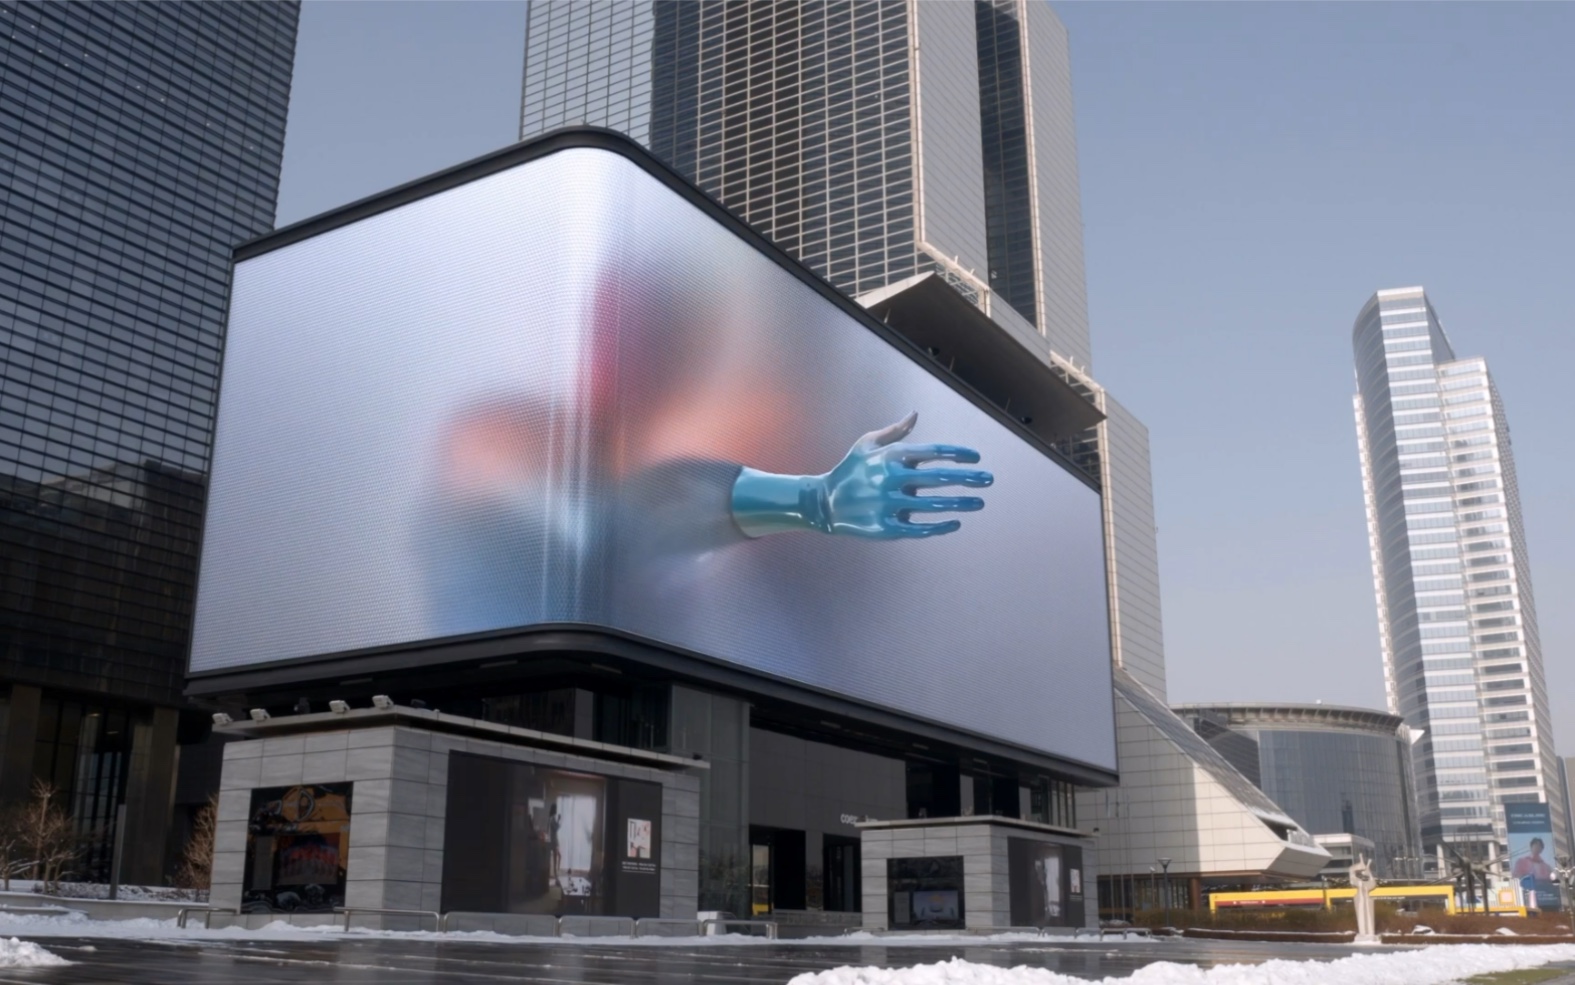 公共媒体艺术"行为艺术,韩国裸眼3d大屏创意频出,用媒体艺术展示行为